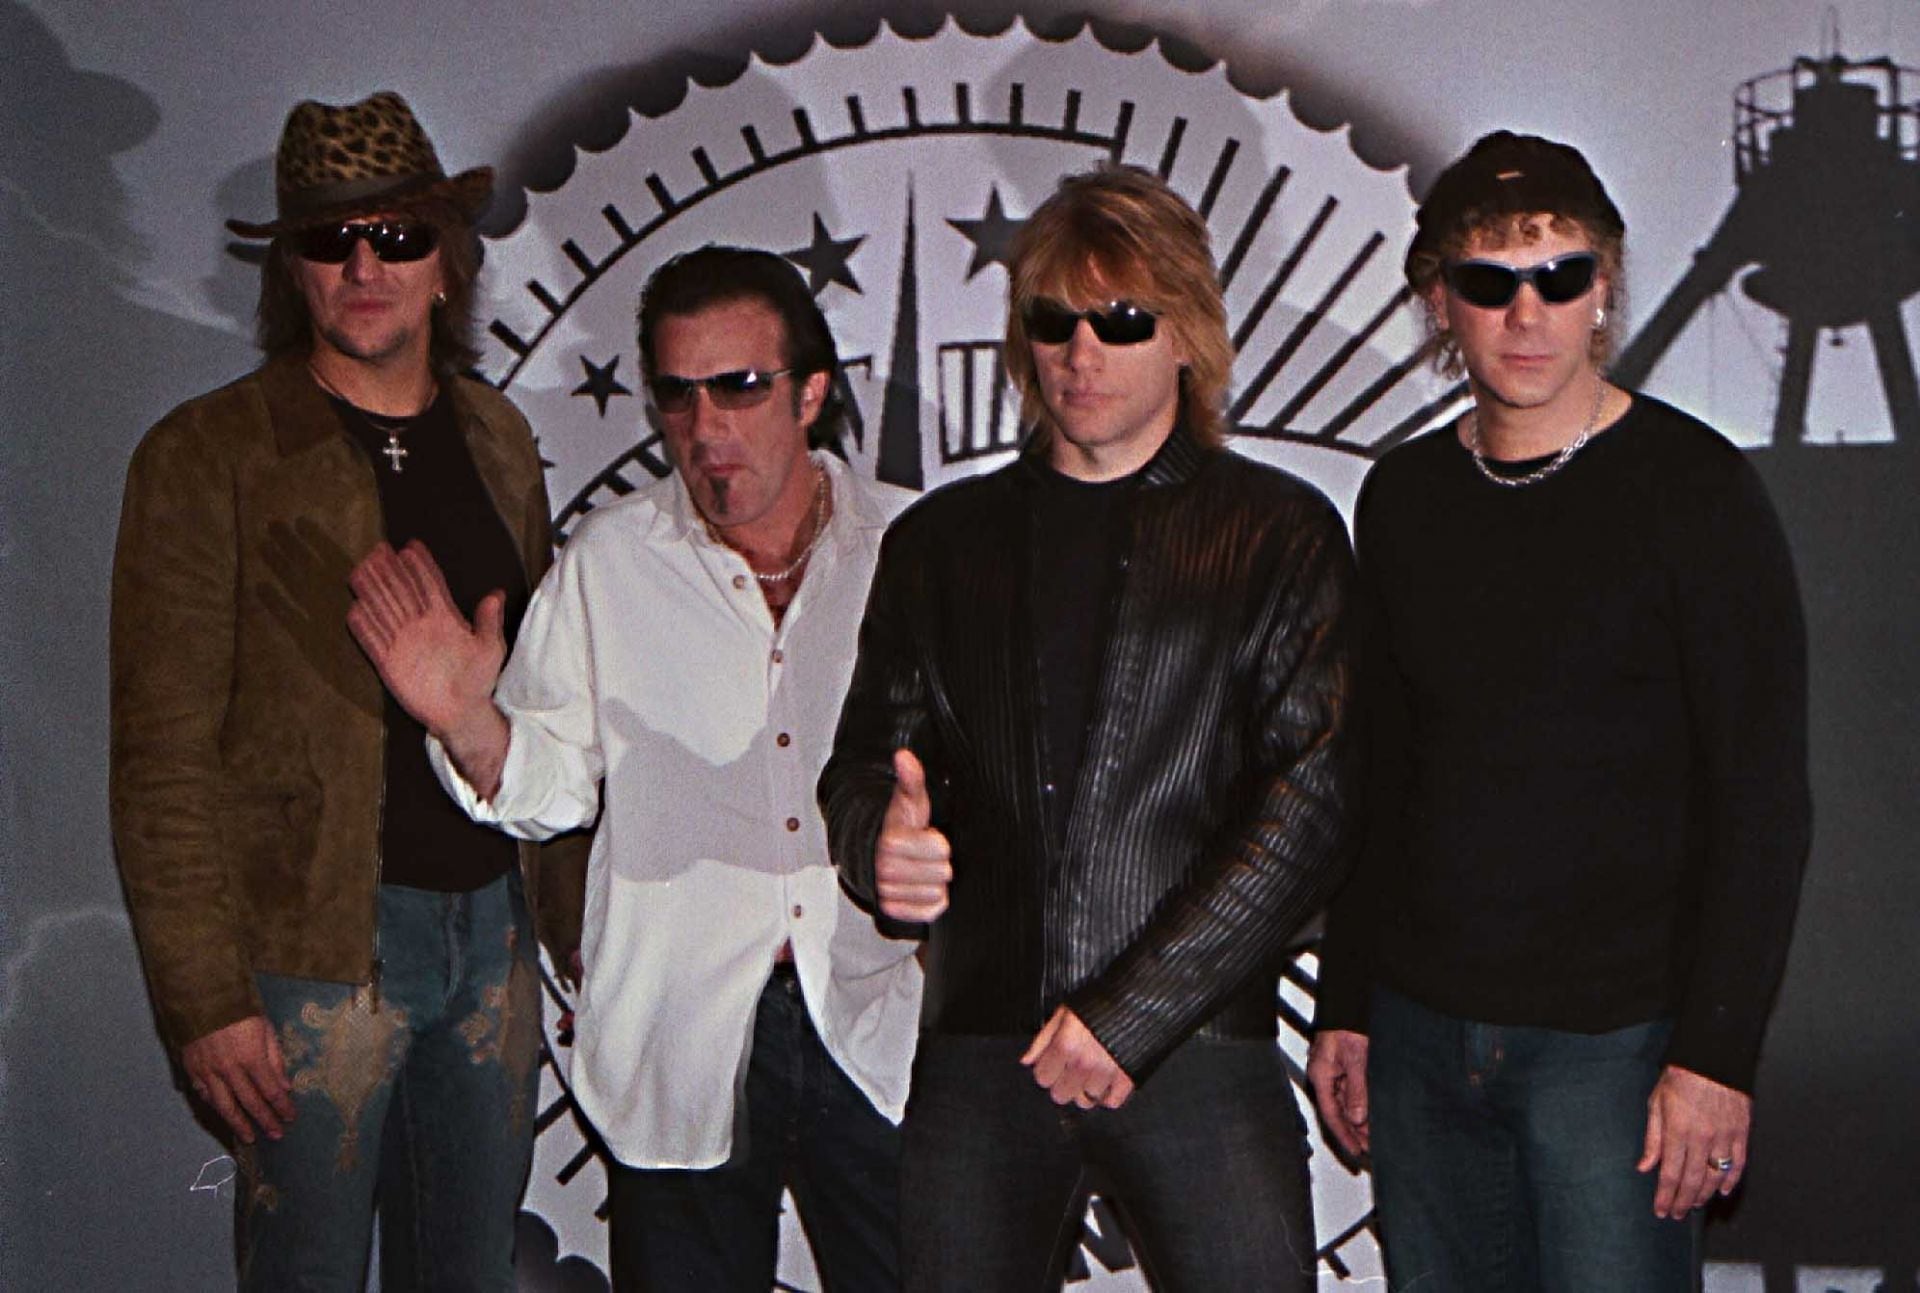 Jon Bon Jovi, fundador de la banda de rock Bon Jovi, se sometió a una cirugía. (Foto: Cuartoscuro.com / Archivo).